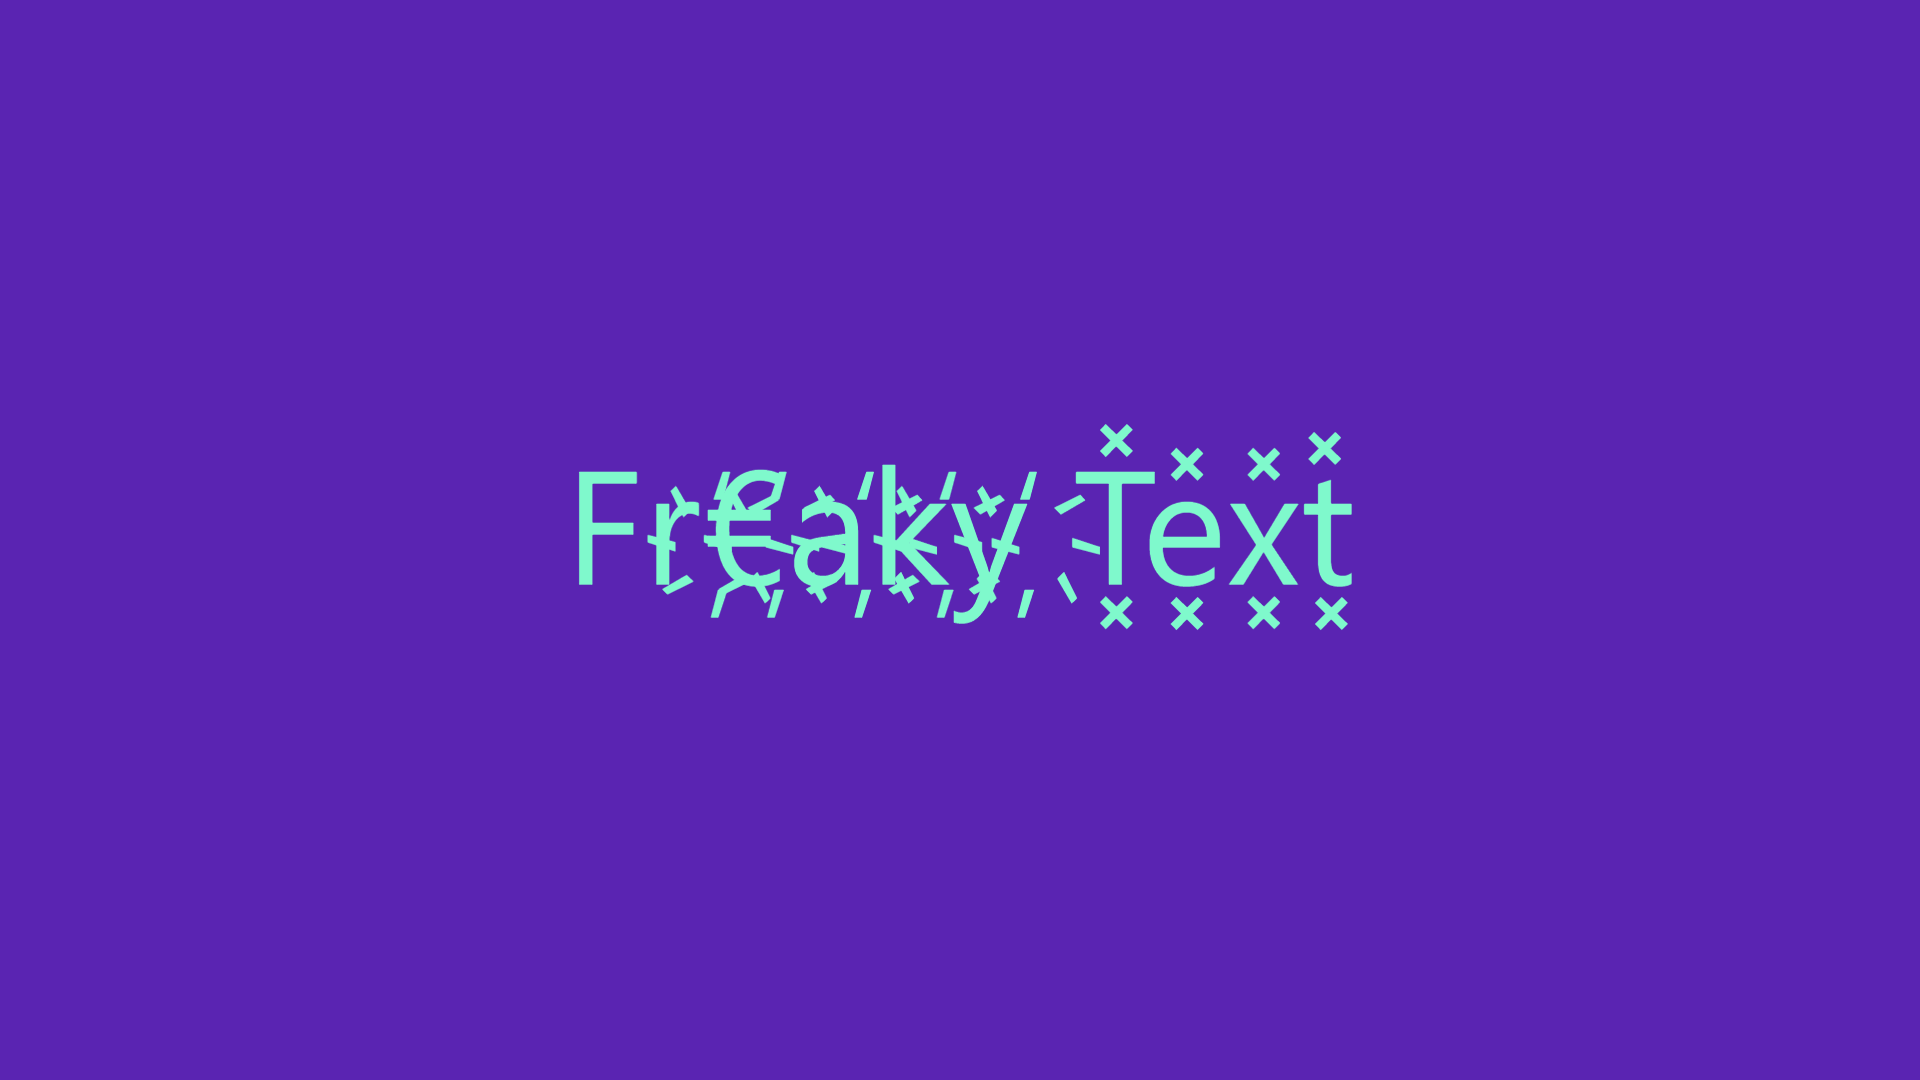 Freaky Text Generator